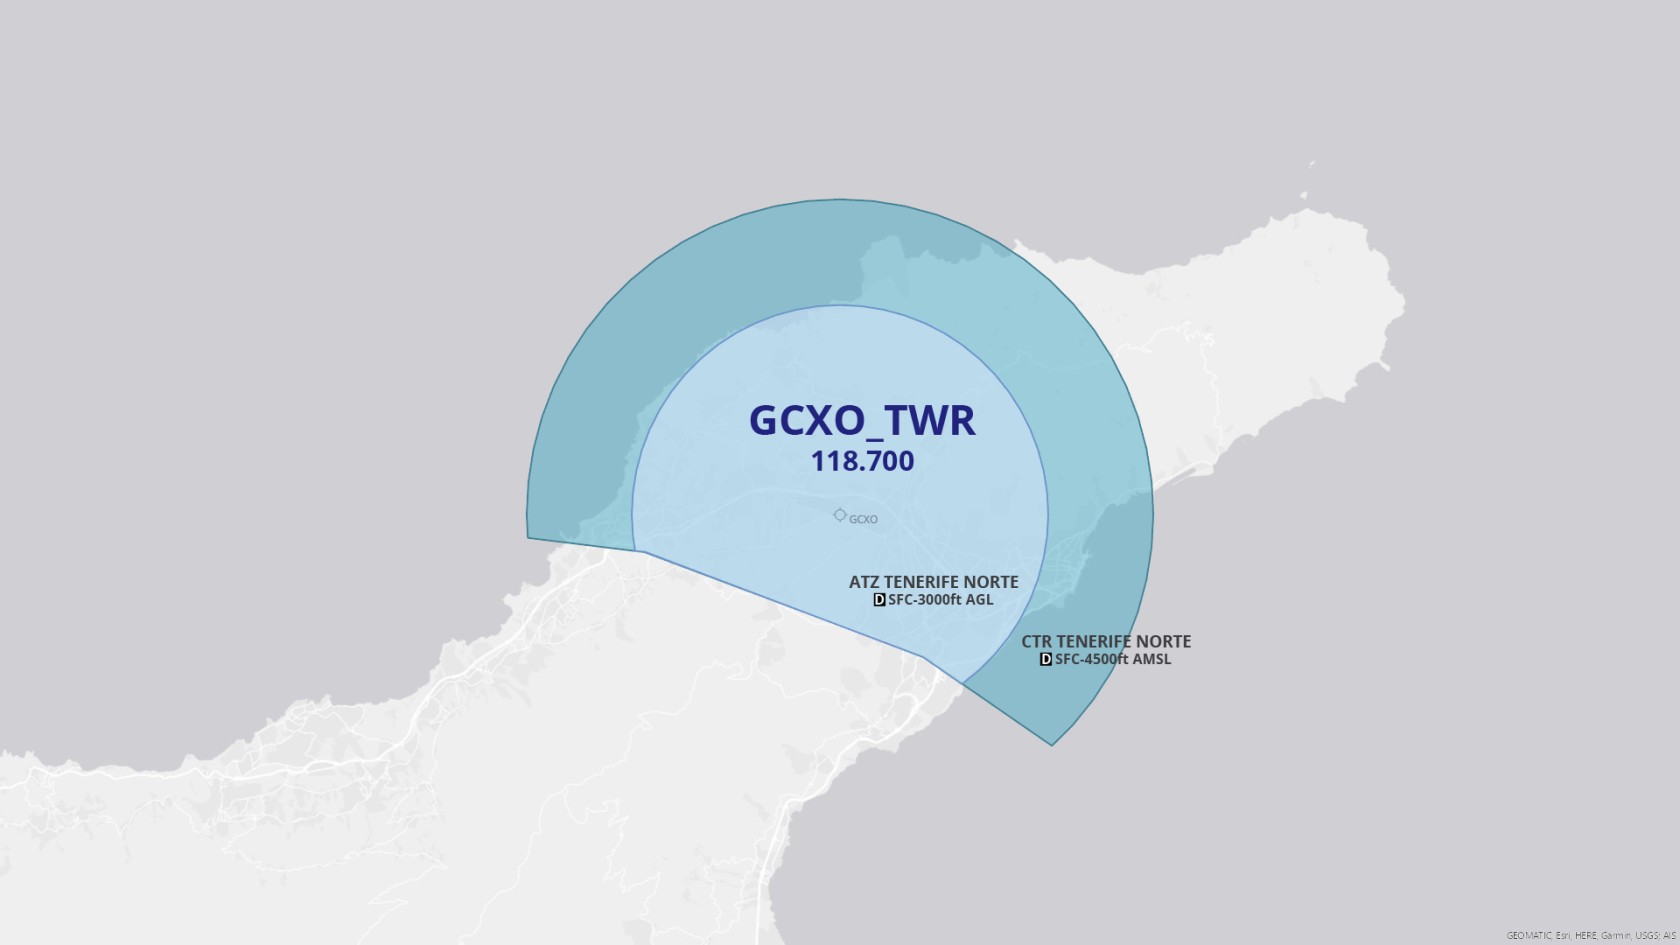 GCCC_GCXO_TWR.jpg